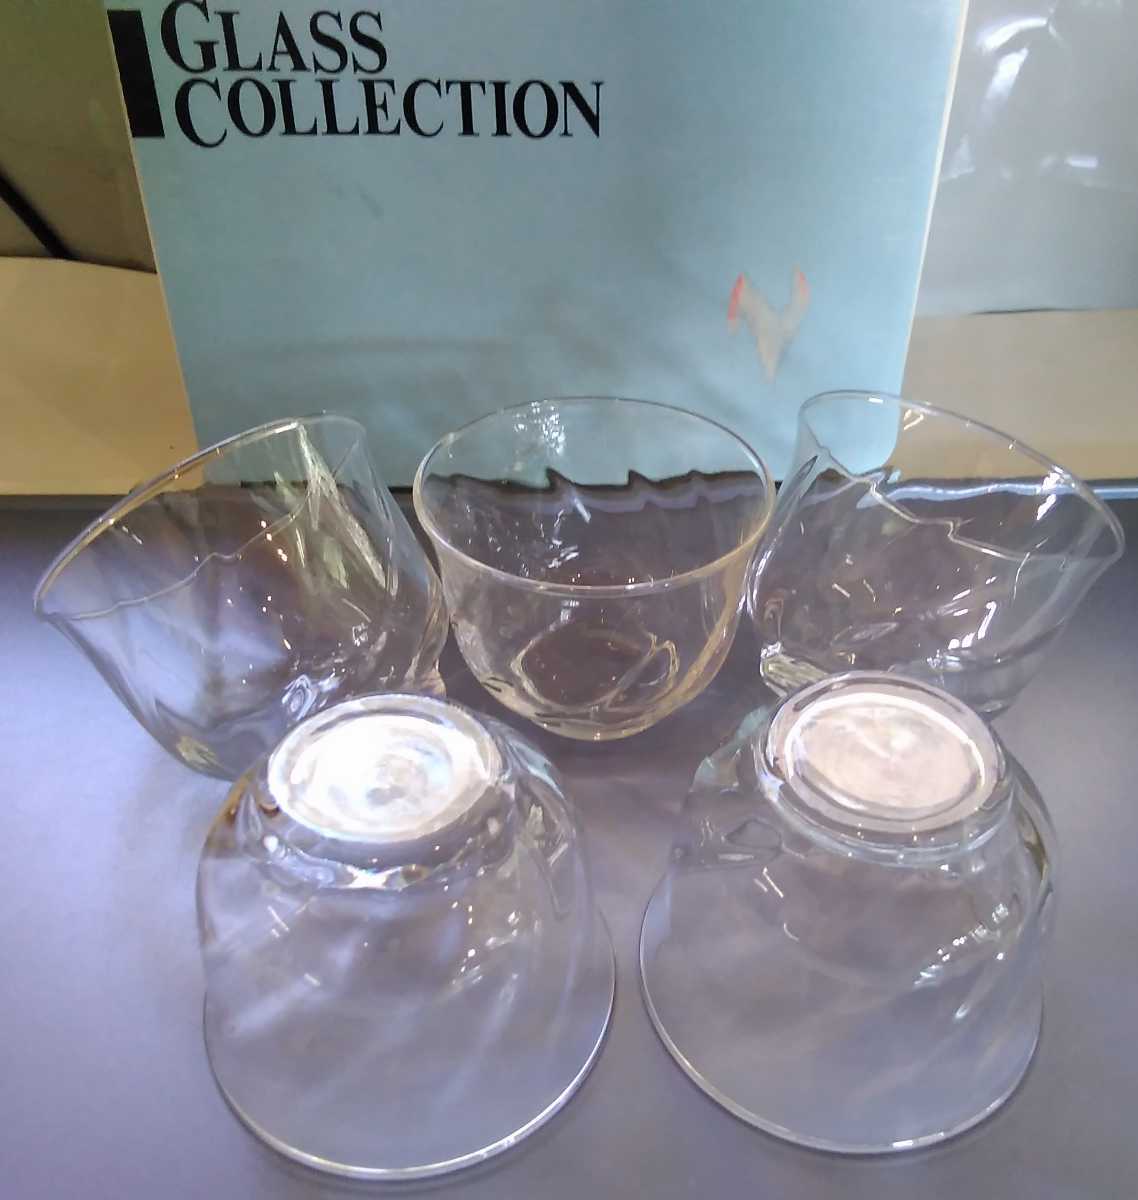 モール冷茶 ５客セット ◆ガラス器 冷茶グラス◆ 日本製 グラス コレクション 未使用_画像2